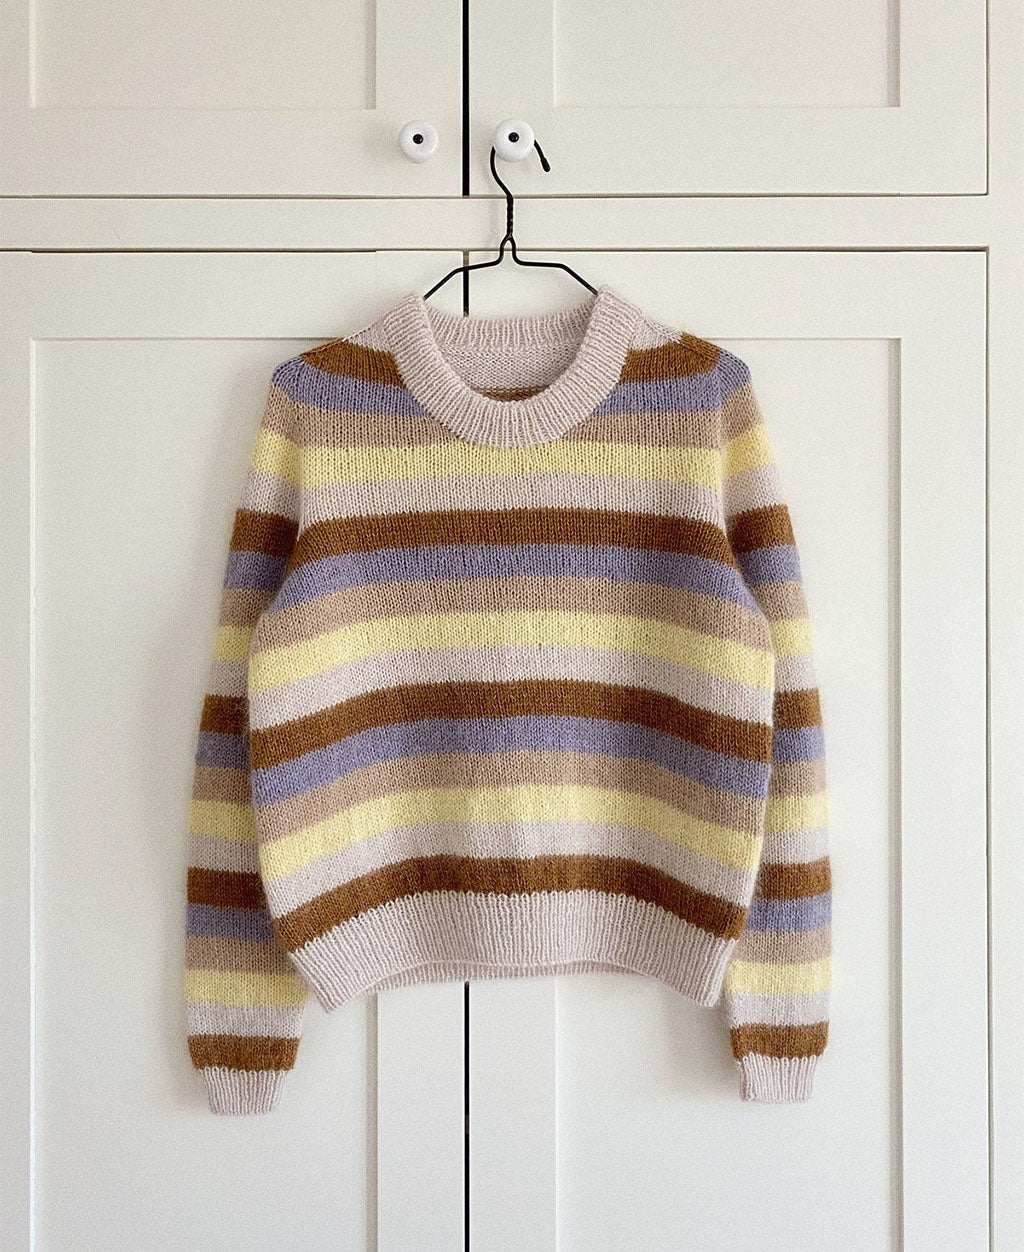 Aros Sweater PetiteKnit - Strickpaket